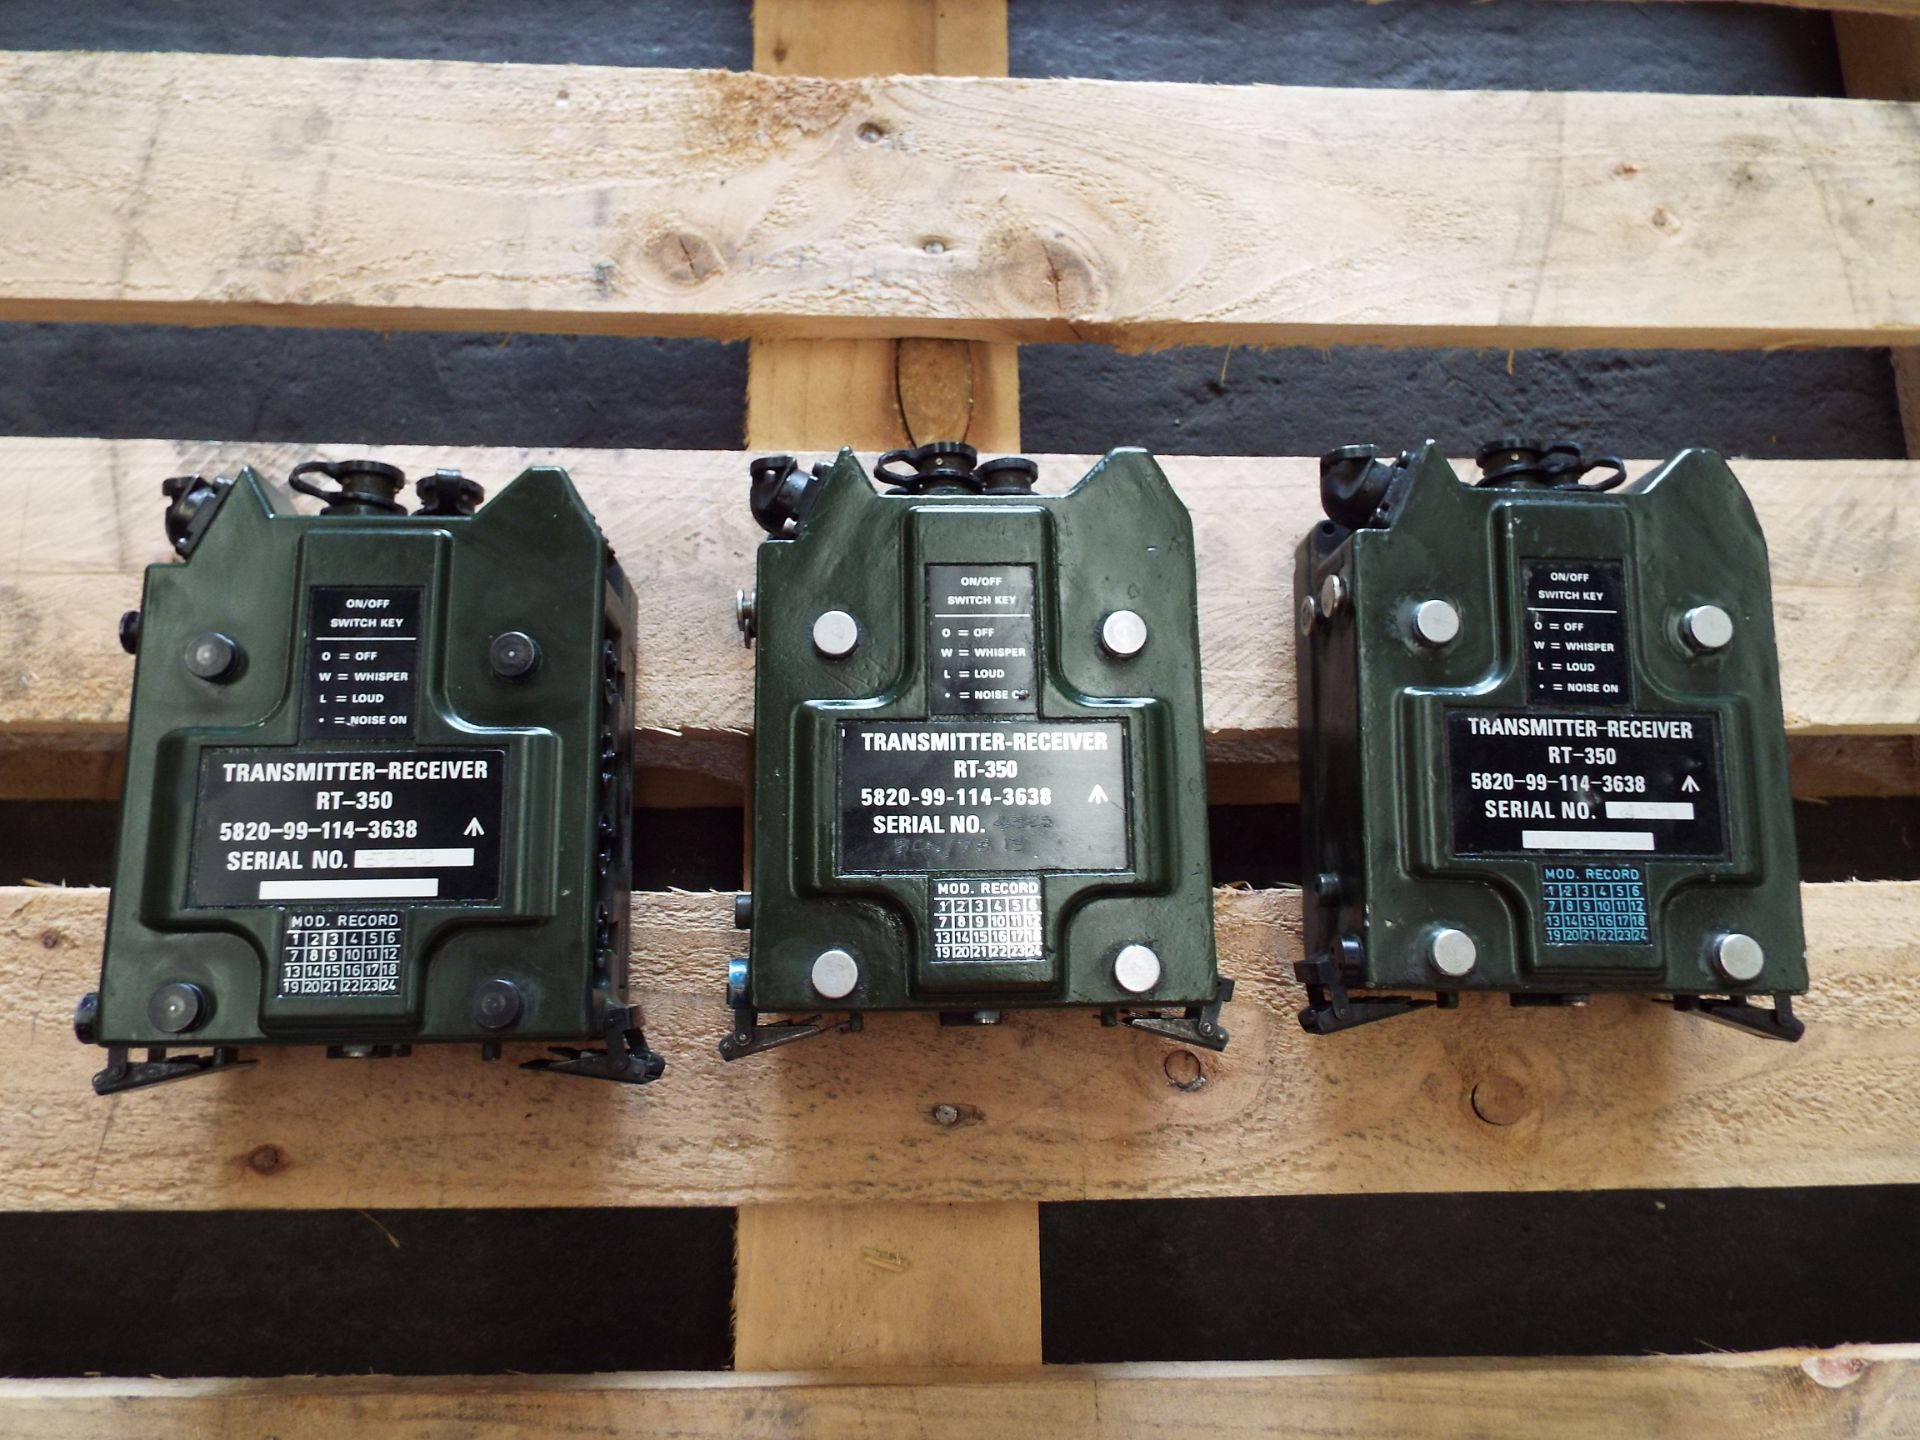 3 x Clansman RT- 350 Transmitter Receivers